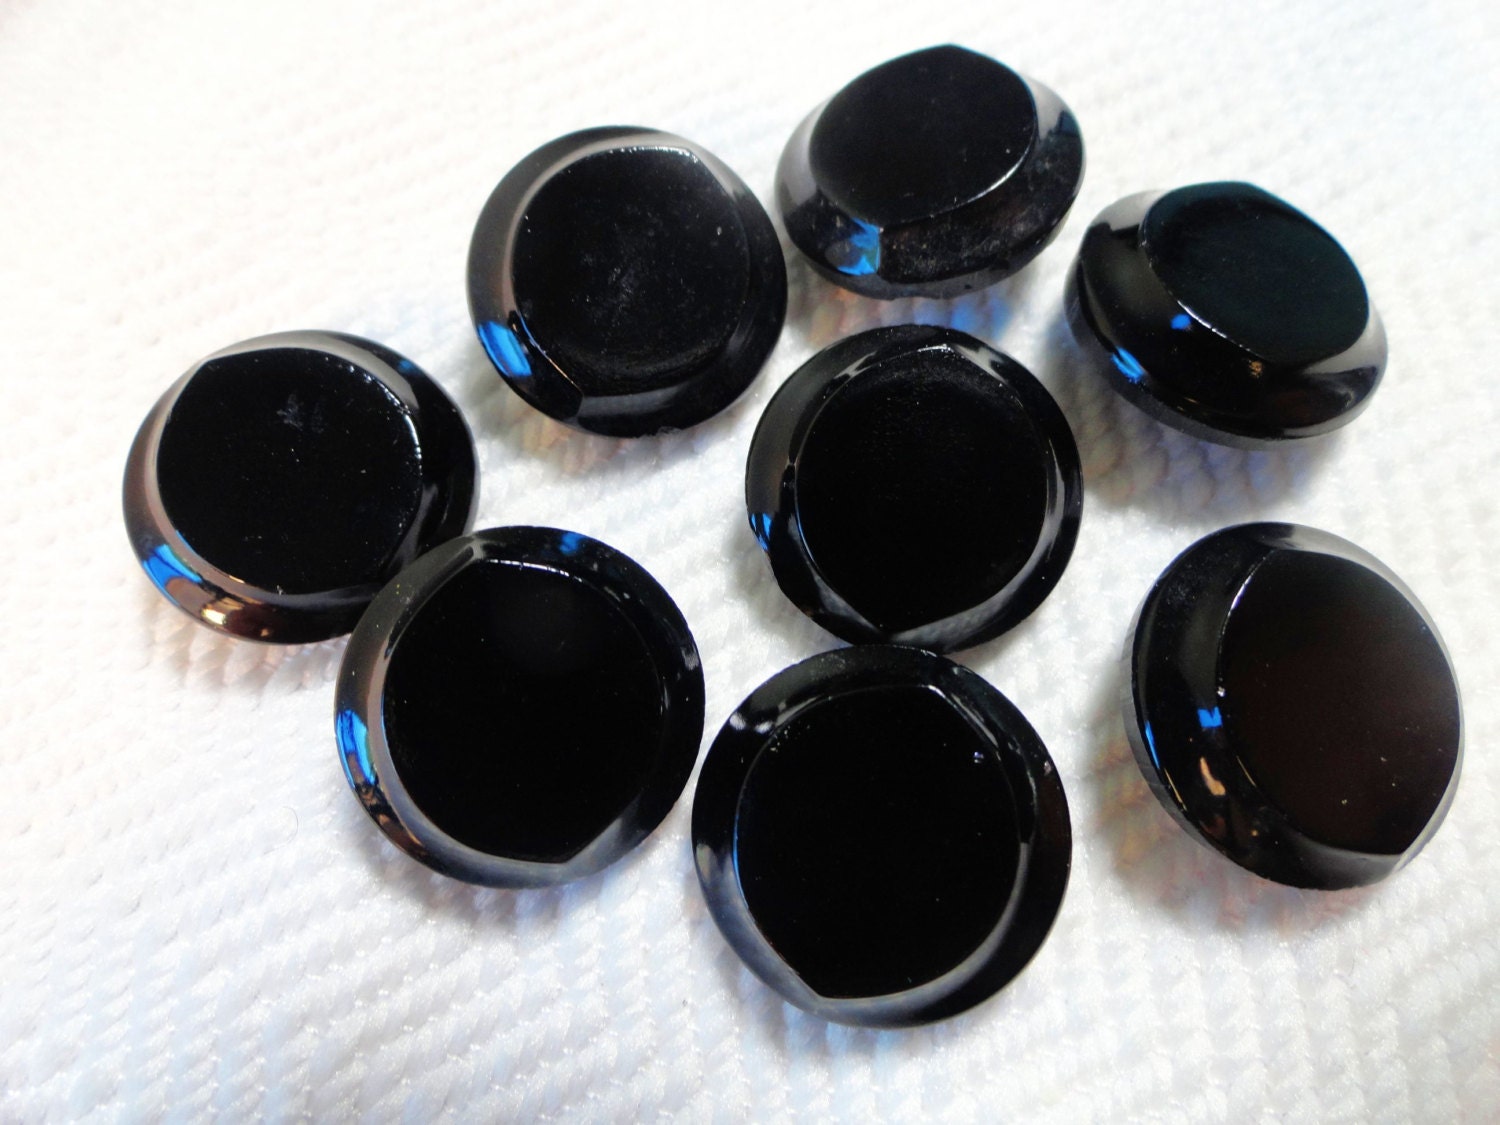 Edwardian Antique Buttons - 6 Vintage Classic Black Glass